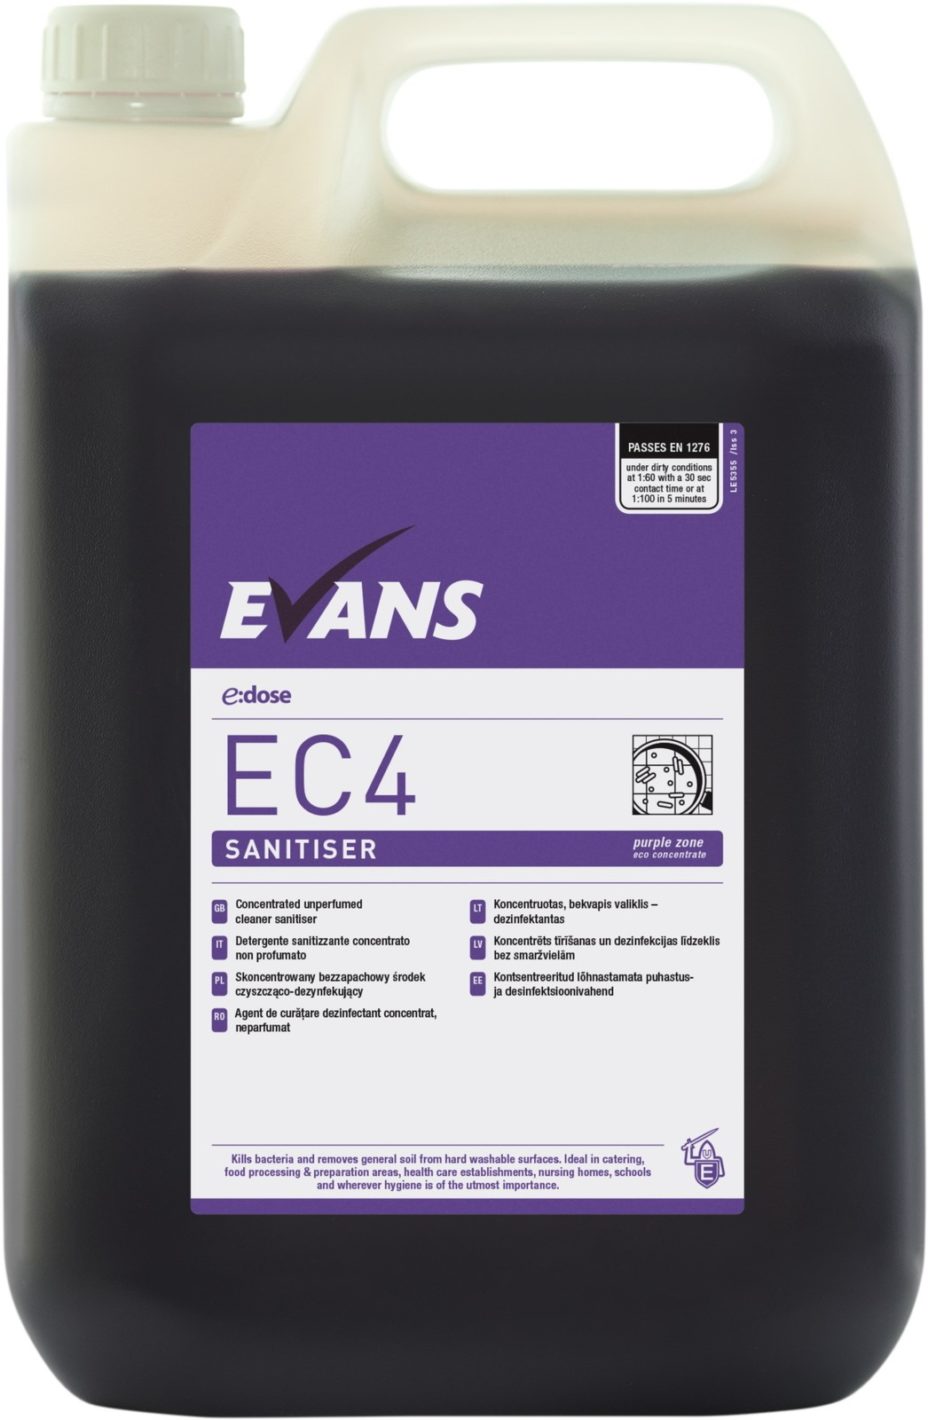 Evans EC4 E-Dose Sanitiser 5Ltr